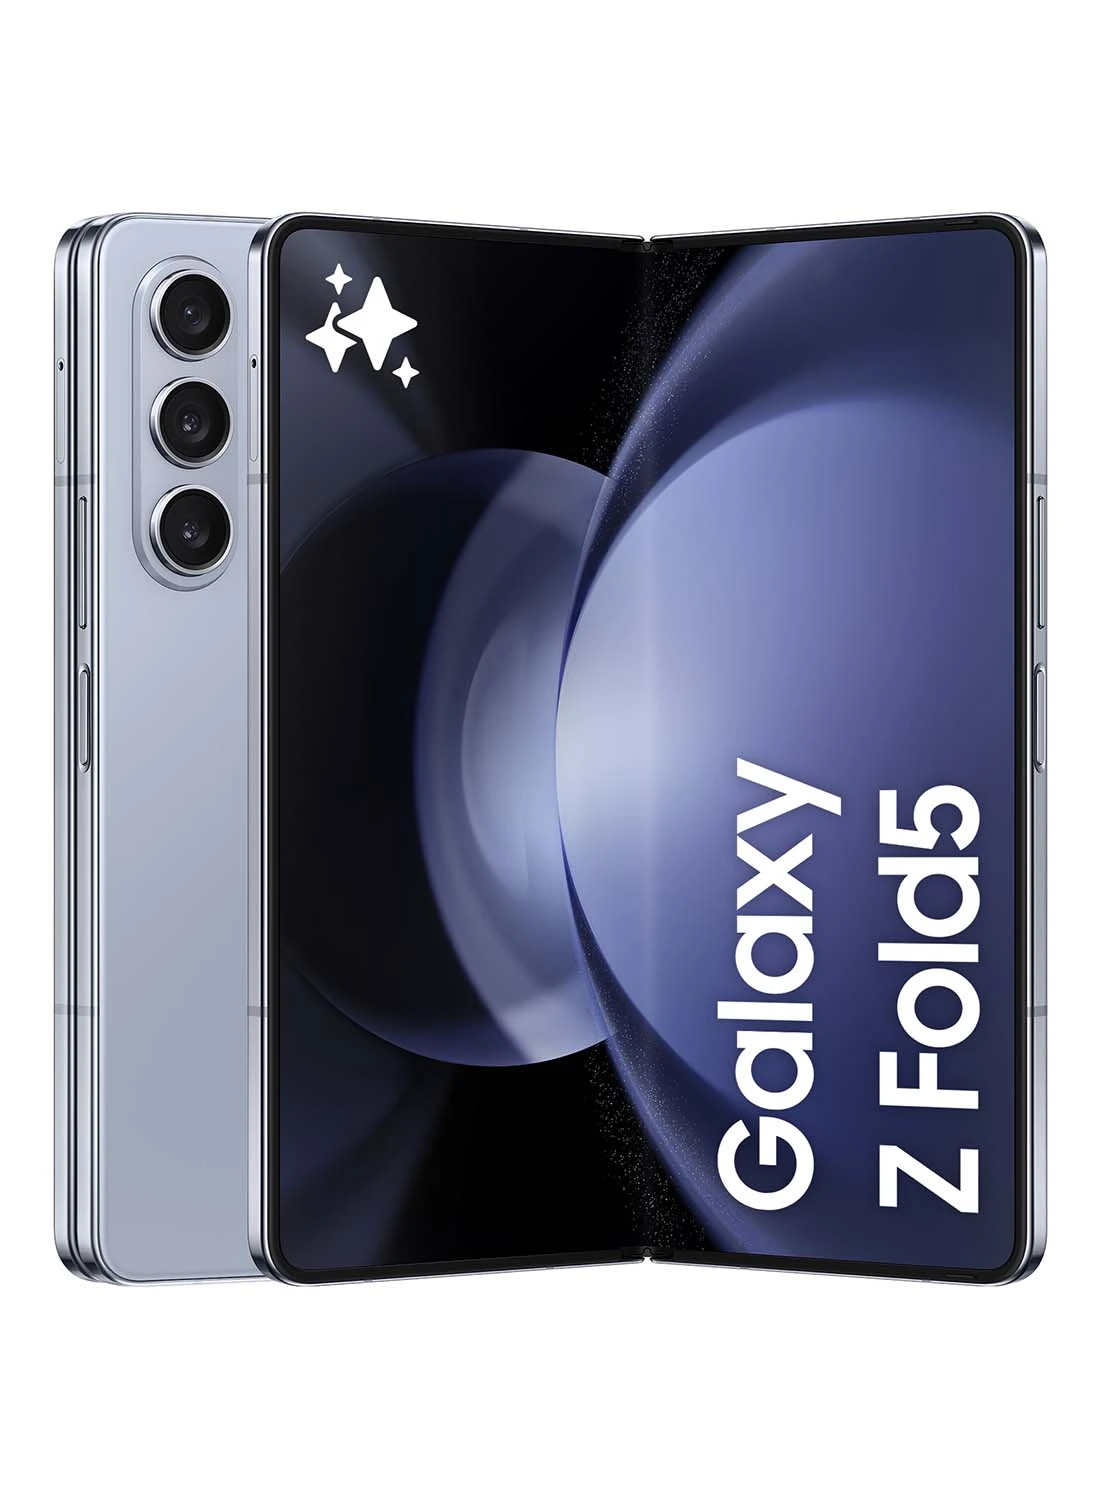 هاتف Samsung Galaxy Z Fold 5 ثنائي الشريحة باللون الأزرق الجليدي ، وذاكرة وصول عشوائي (RAM) سعة 12 جيجابايت ، وذاكرة 256 جيجابايت ، وشبكة 5G - إصدار الشرق الأوسط